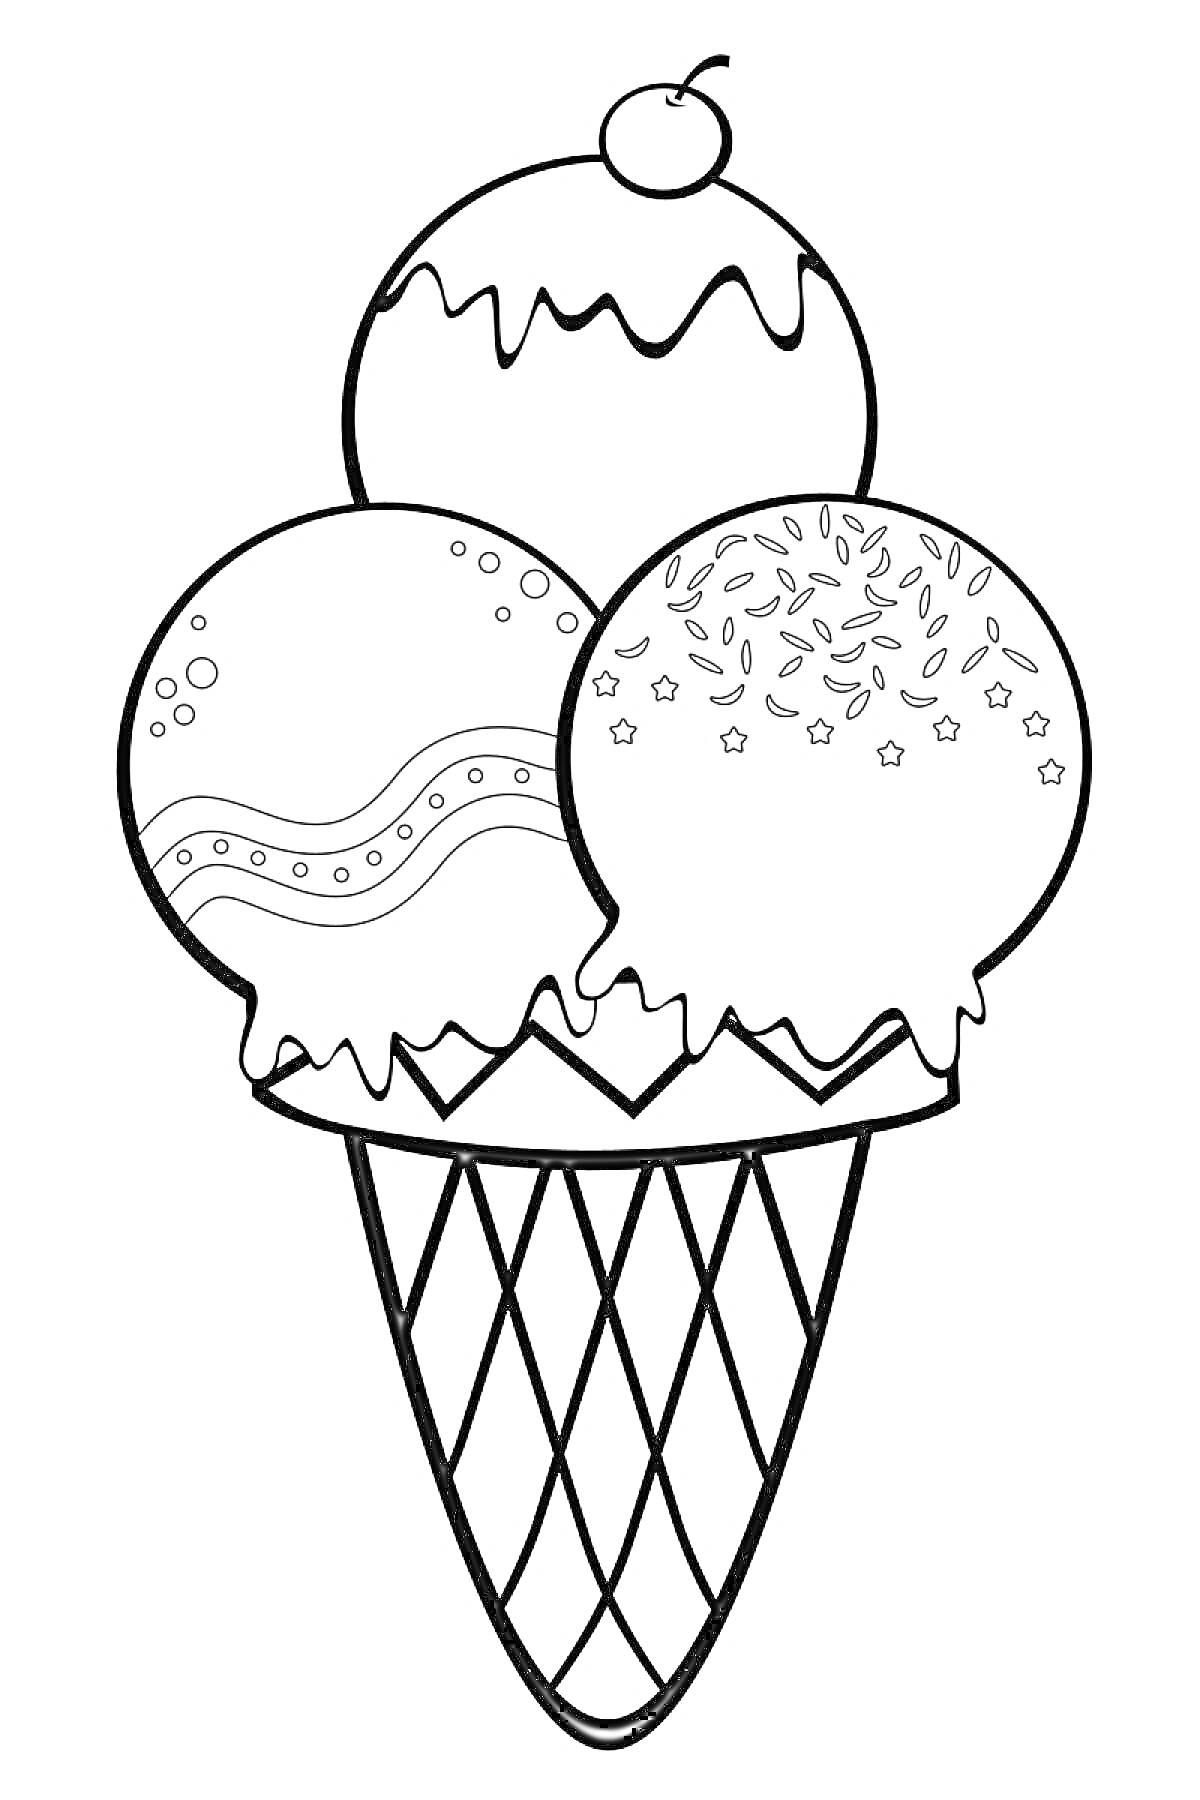 Раскраска Мороженое в вафельном рожке с тремя шариками: украшенный глазурью шарик с вишенкой, шарик с волнистым узором и шарик со звездочками и посыпкой